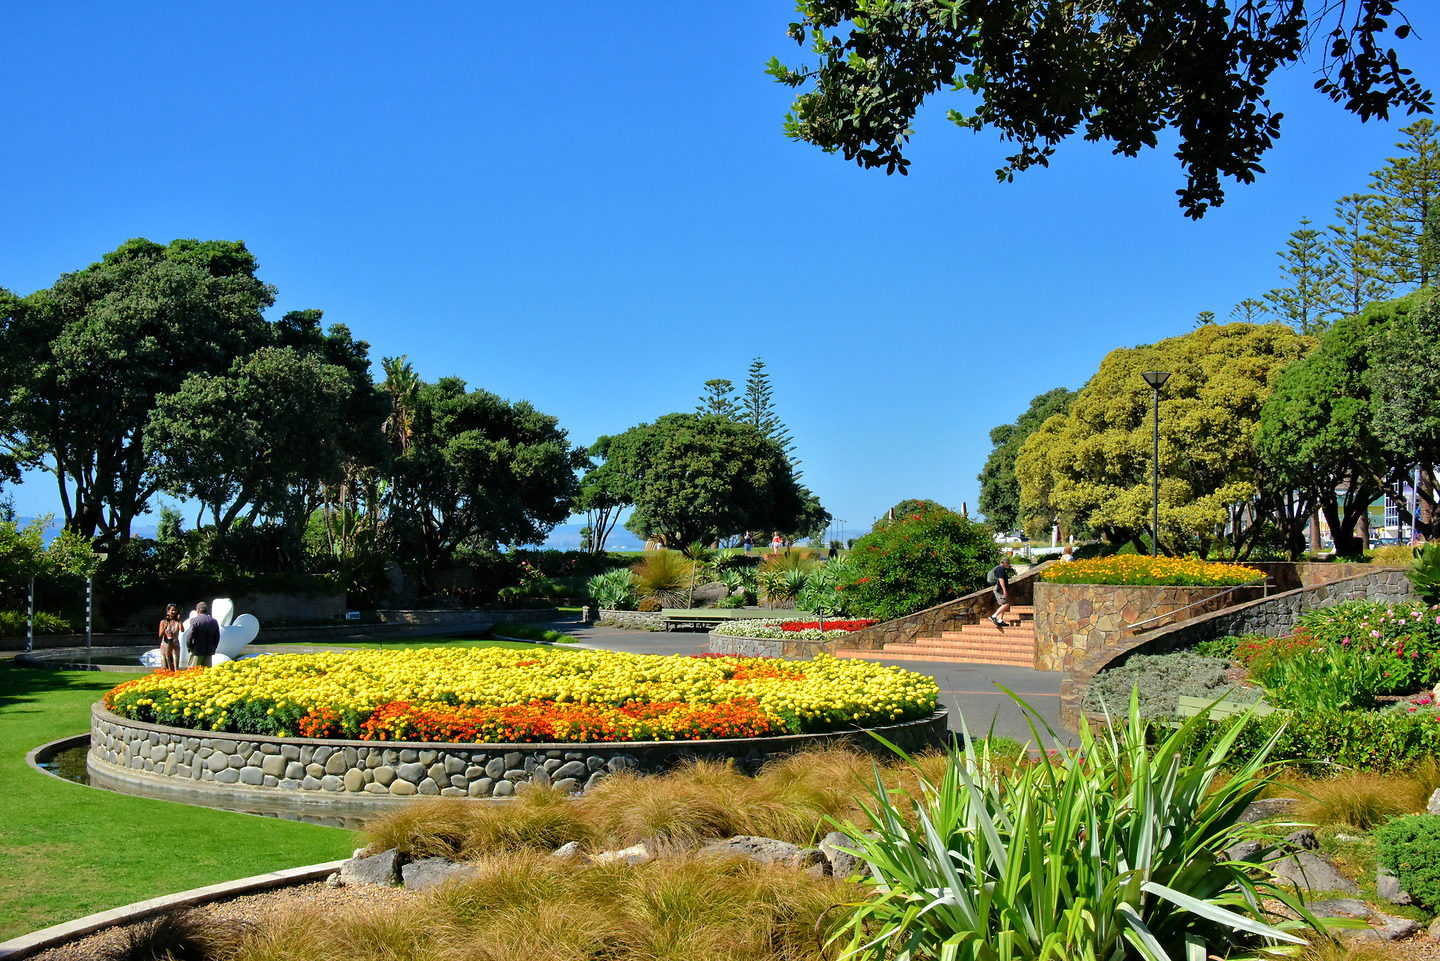 Napier Sunken Gardens, New Zealand @Richard F. Ebert